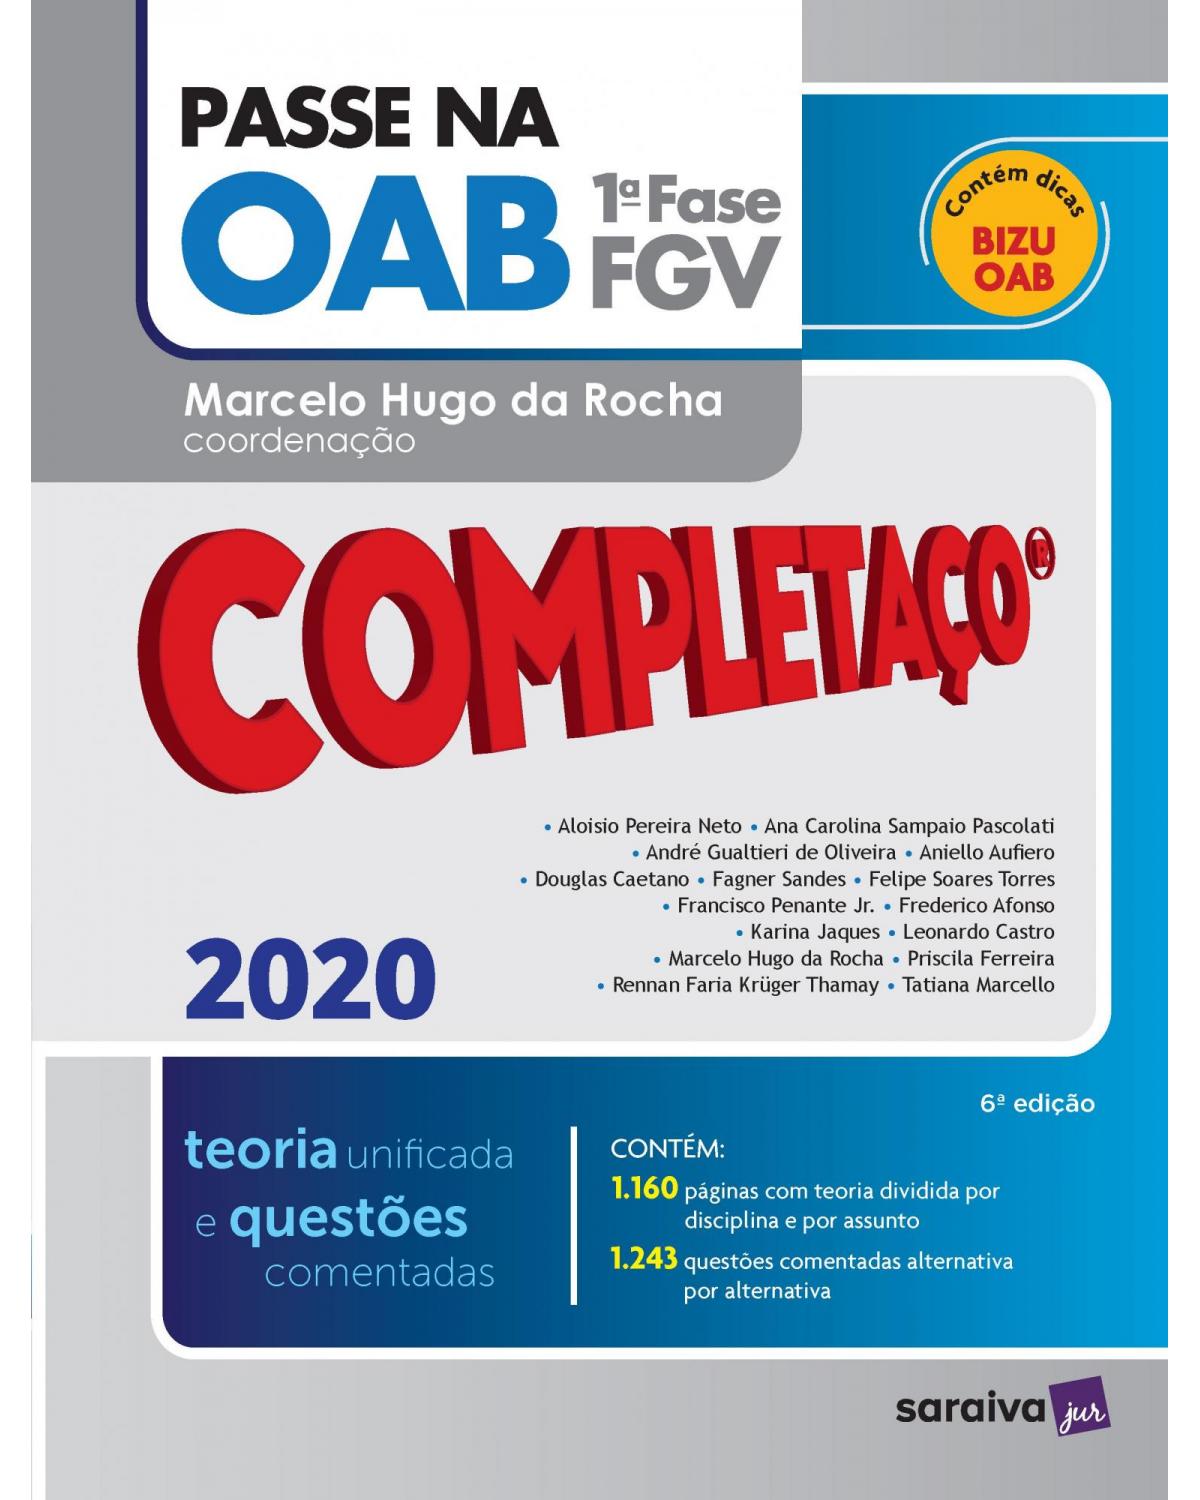 Passe na OAB - 1ª fase FGV - teoria unificada e questões comentadas - 6ª Edição | 2020